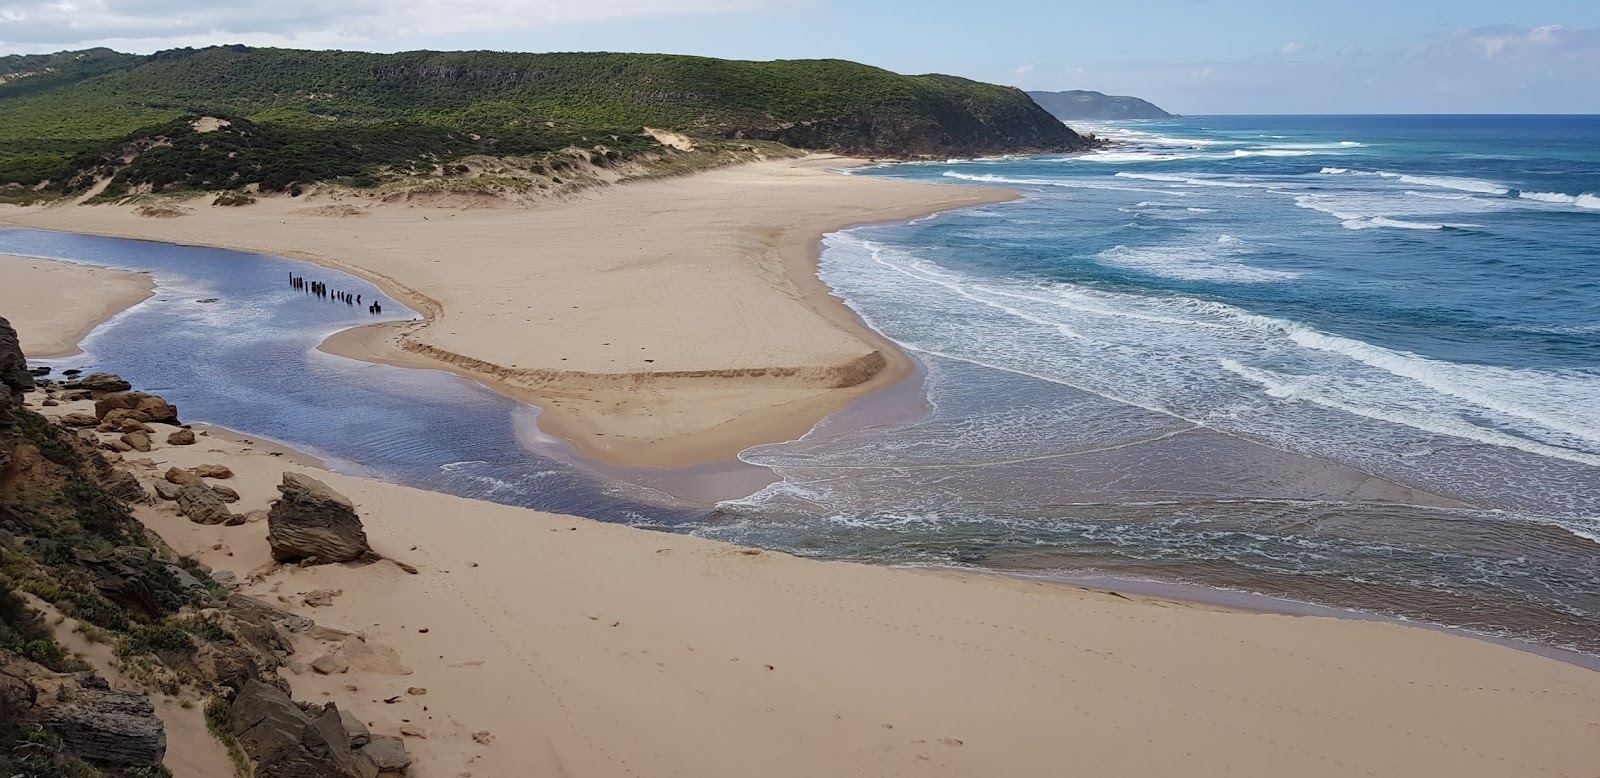 Zdjęcie Aire River Beach z powierzchnią jasny piasek